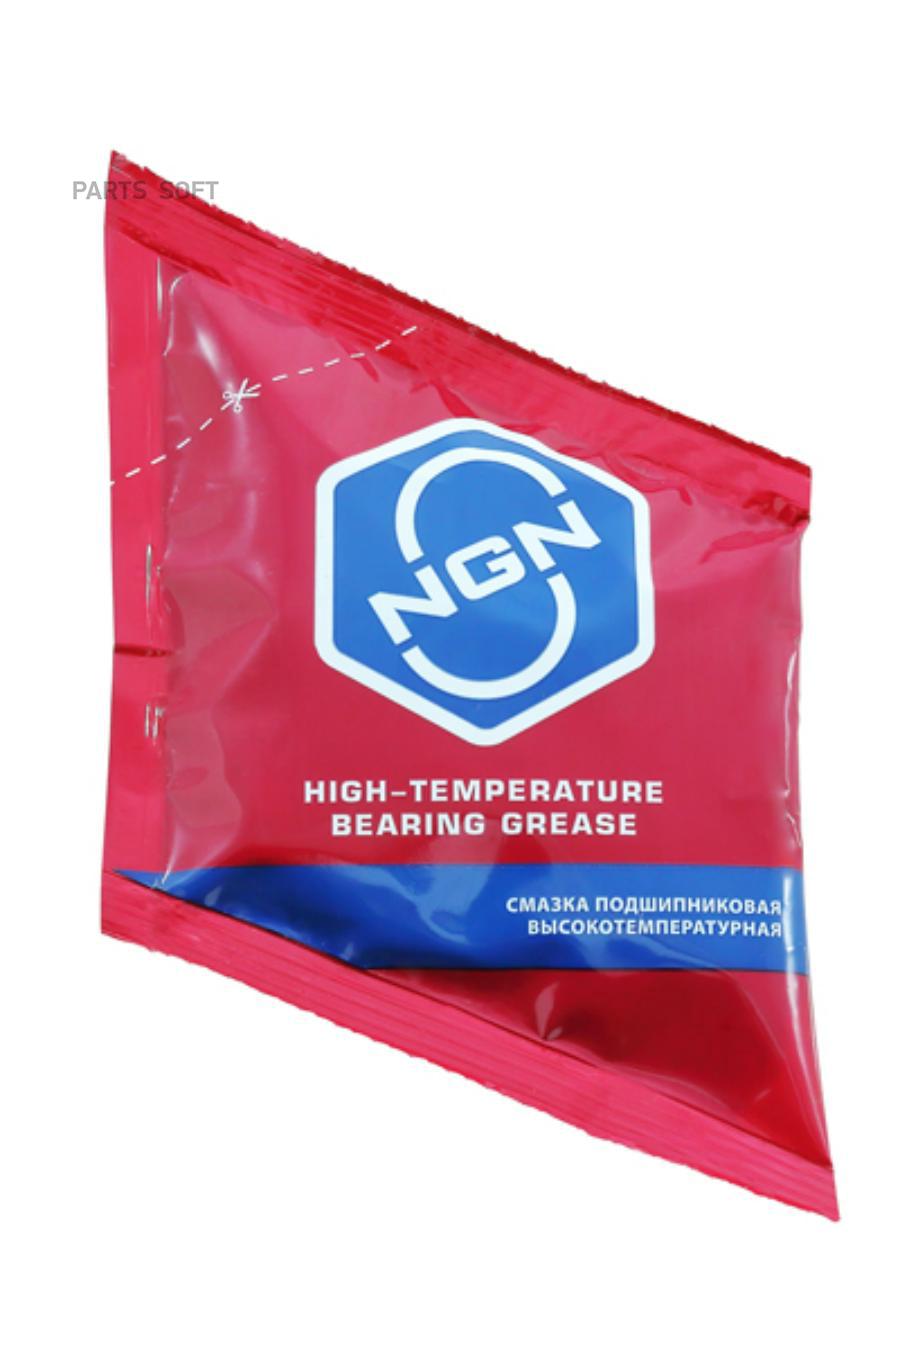 High-Temperature Bearing Grease Смазка Подшипниковая Высокотемпературная 40 Гр NGN  V0067